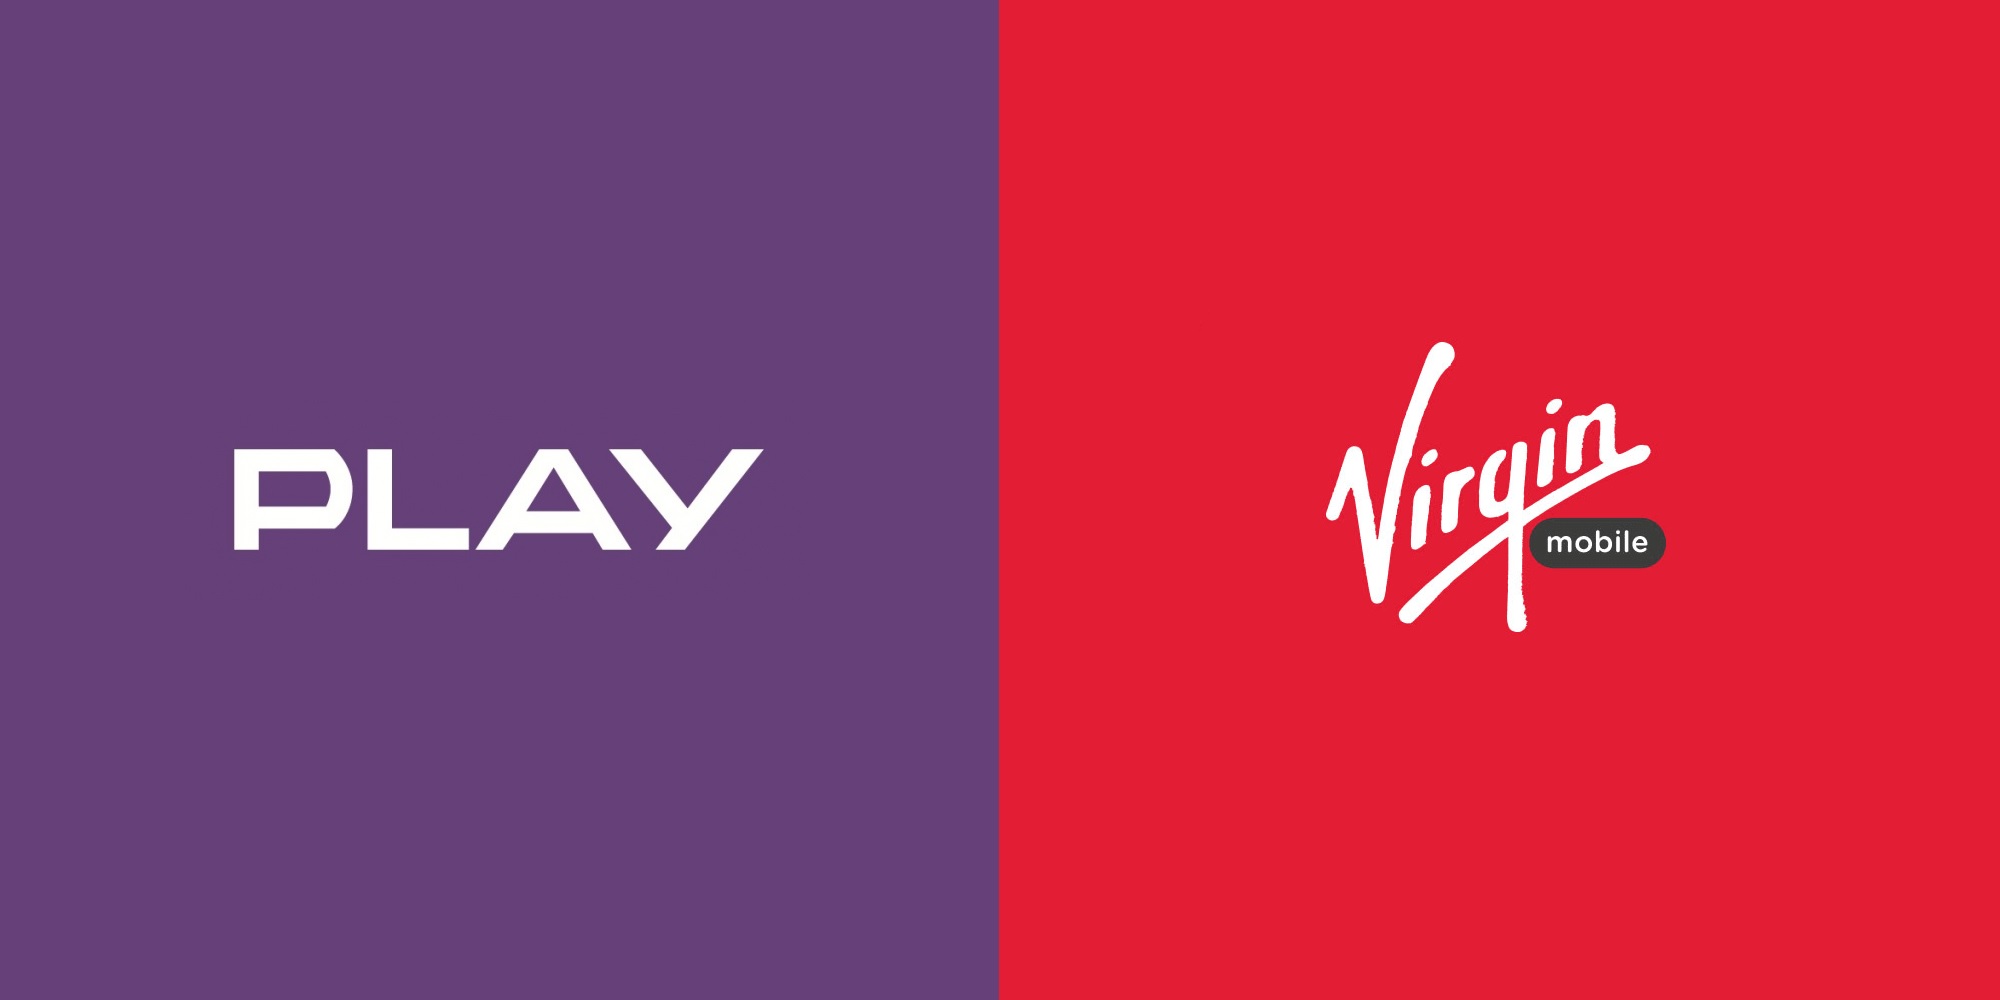 Play Virgin Mobile logo